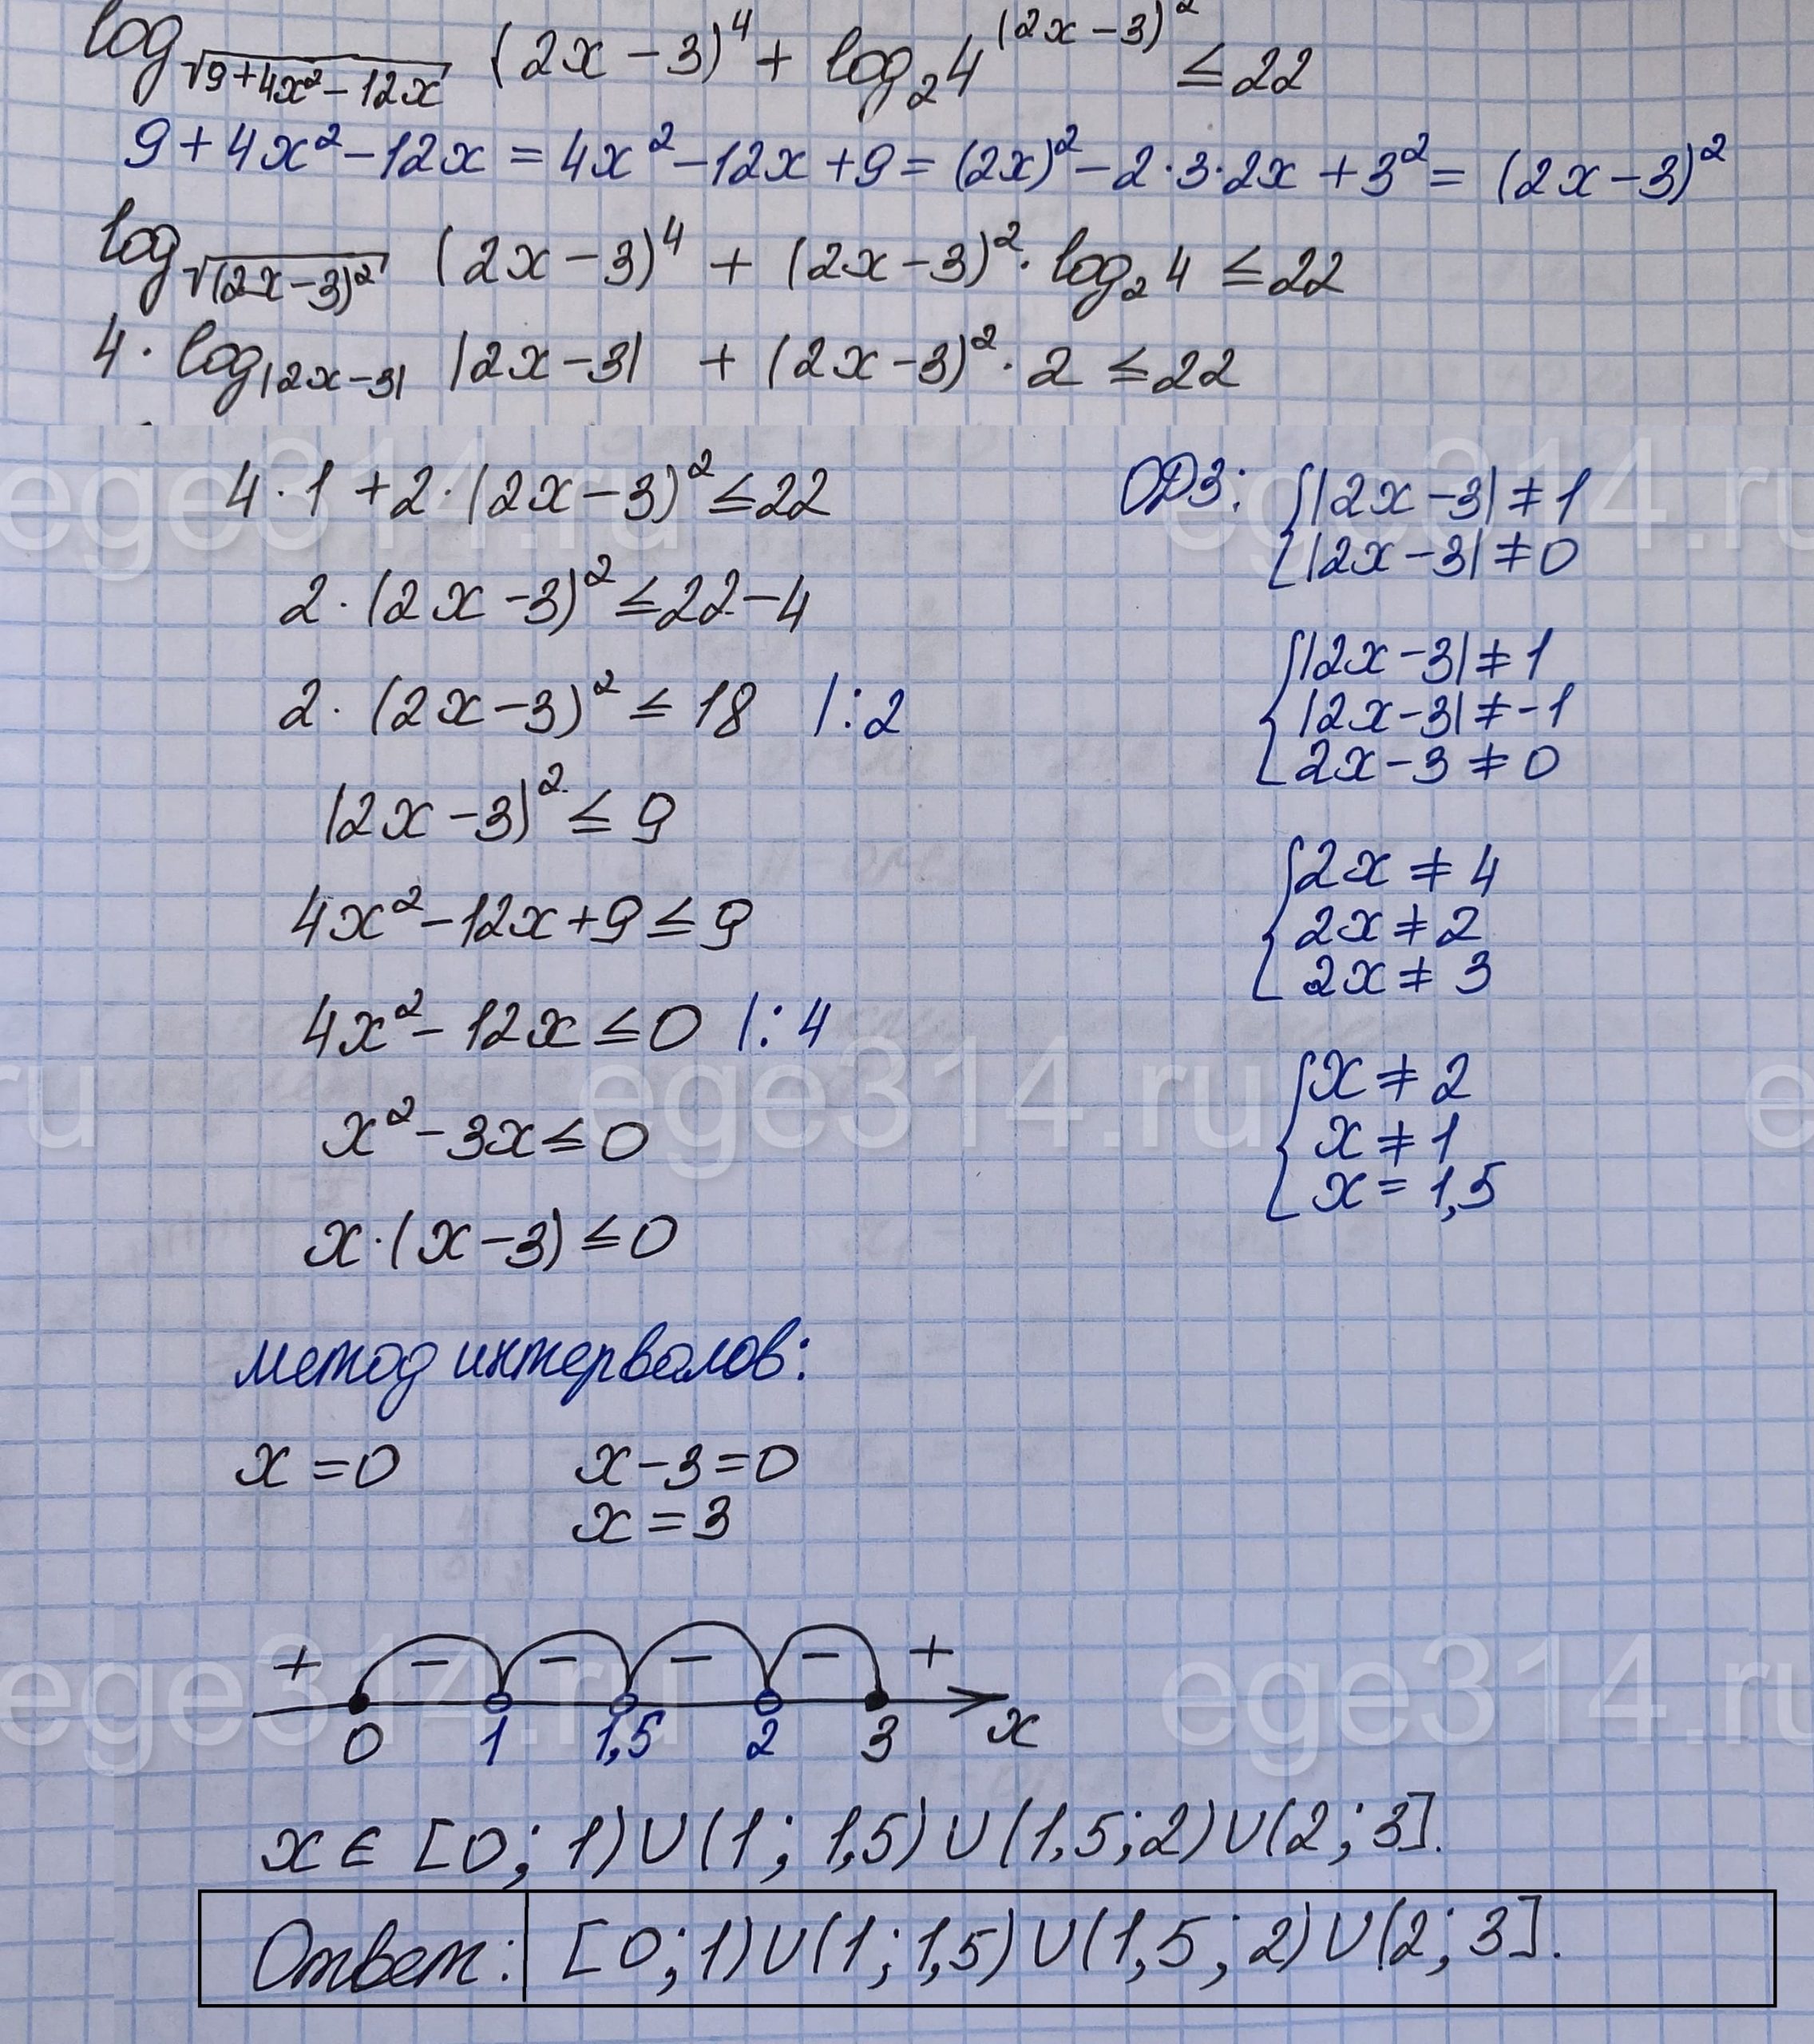 Решите неравенство log√(9+4x^2-12x) (2x-3)^4+log2 4^(2x-3)^2 = 22.